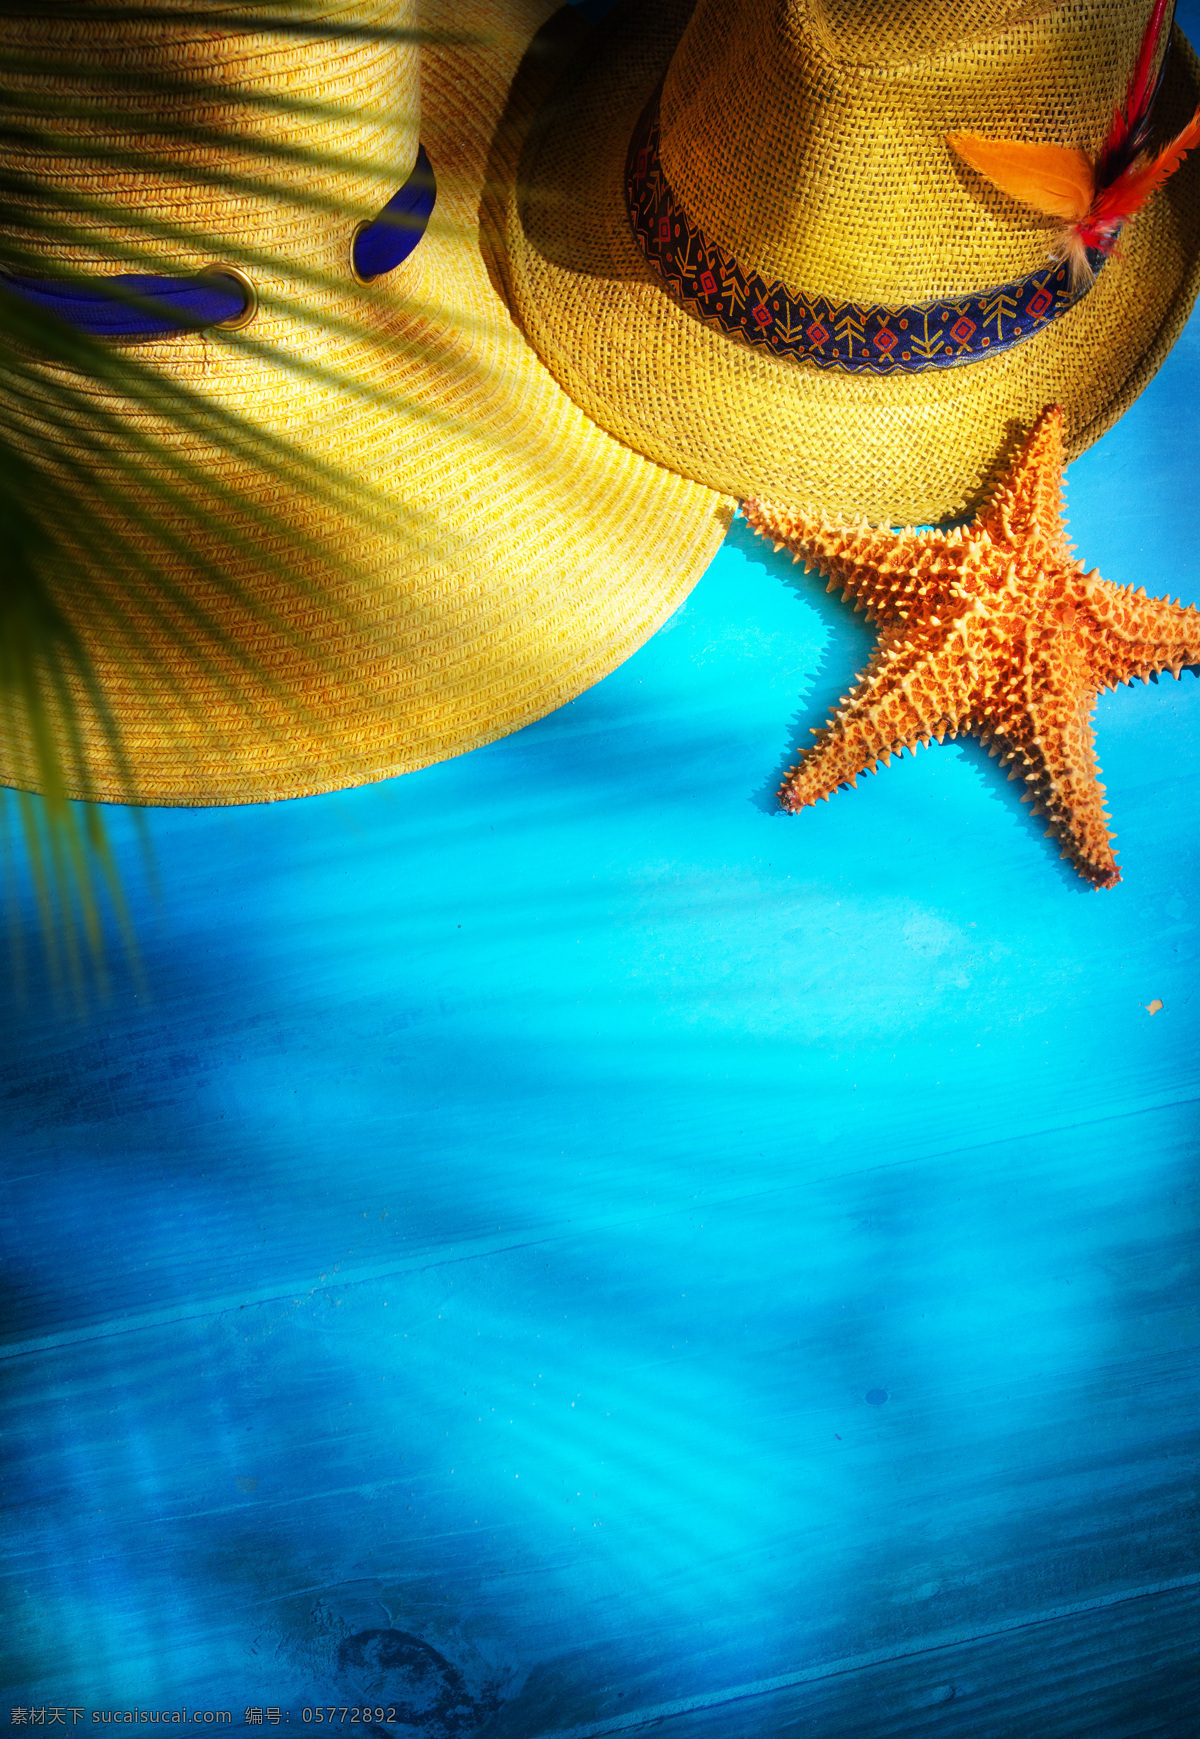 草帽与海星 草帽 海星 帽子 夏日旅行 旅游 旅行主题 其他类别 生活百科 青色 天蓝色